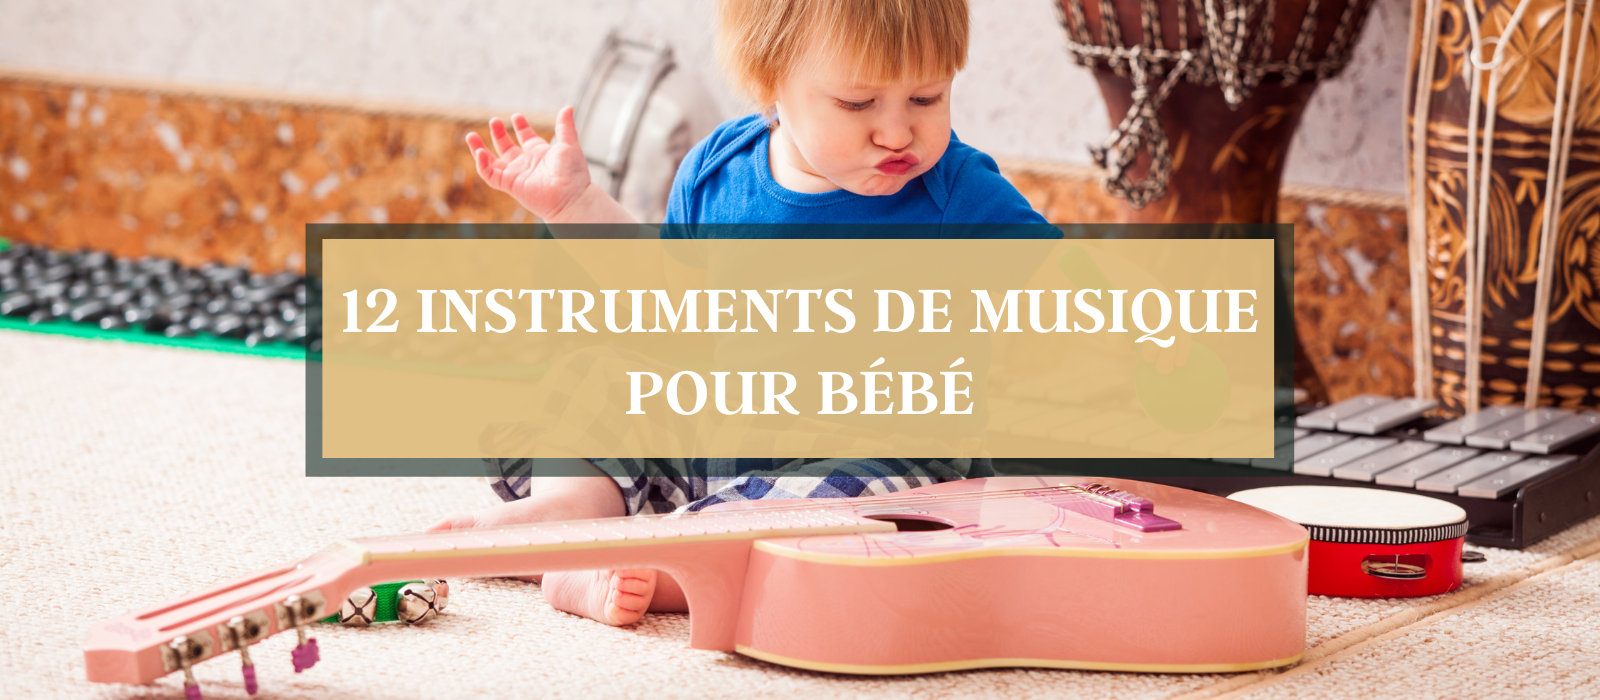 Instrument de musique pour enfant : faites le bon choix